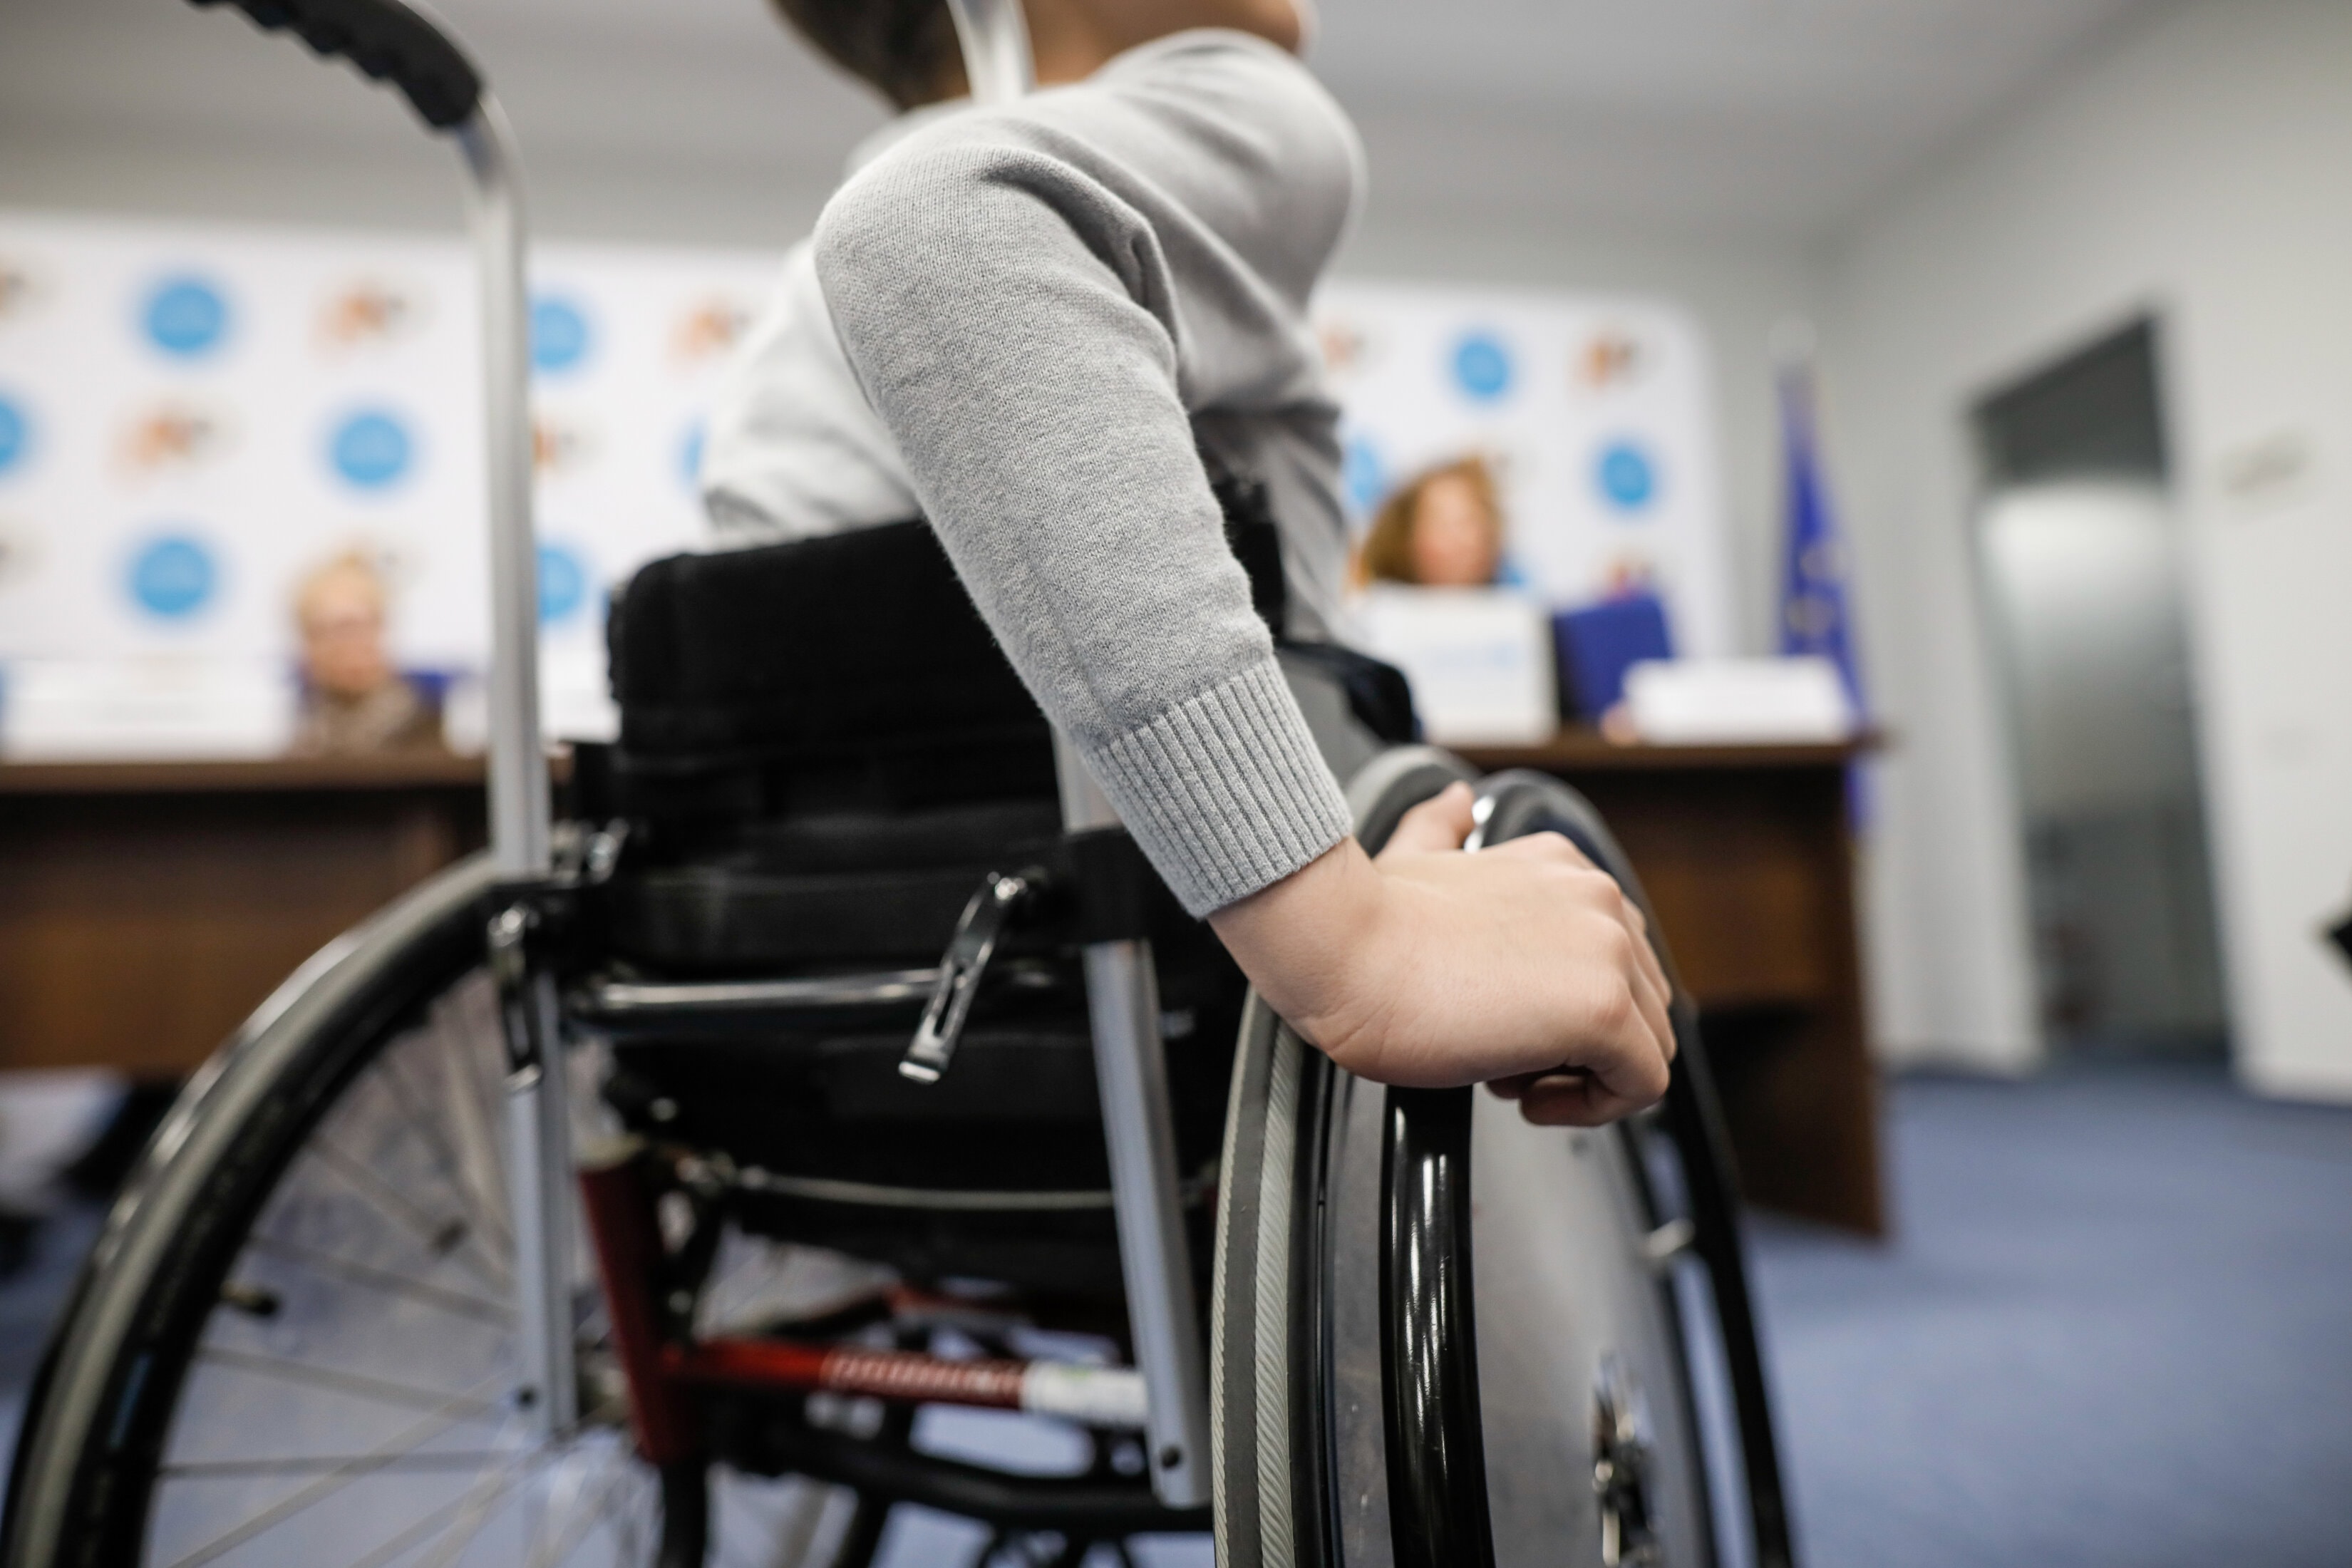 Neuf personnes paralysées ont pu remarcher après une stimulation électrique délivrée dans leur colonne vertébrale. © MoiraM, Adobe Stock